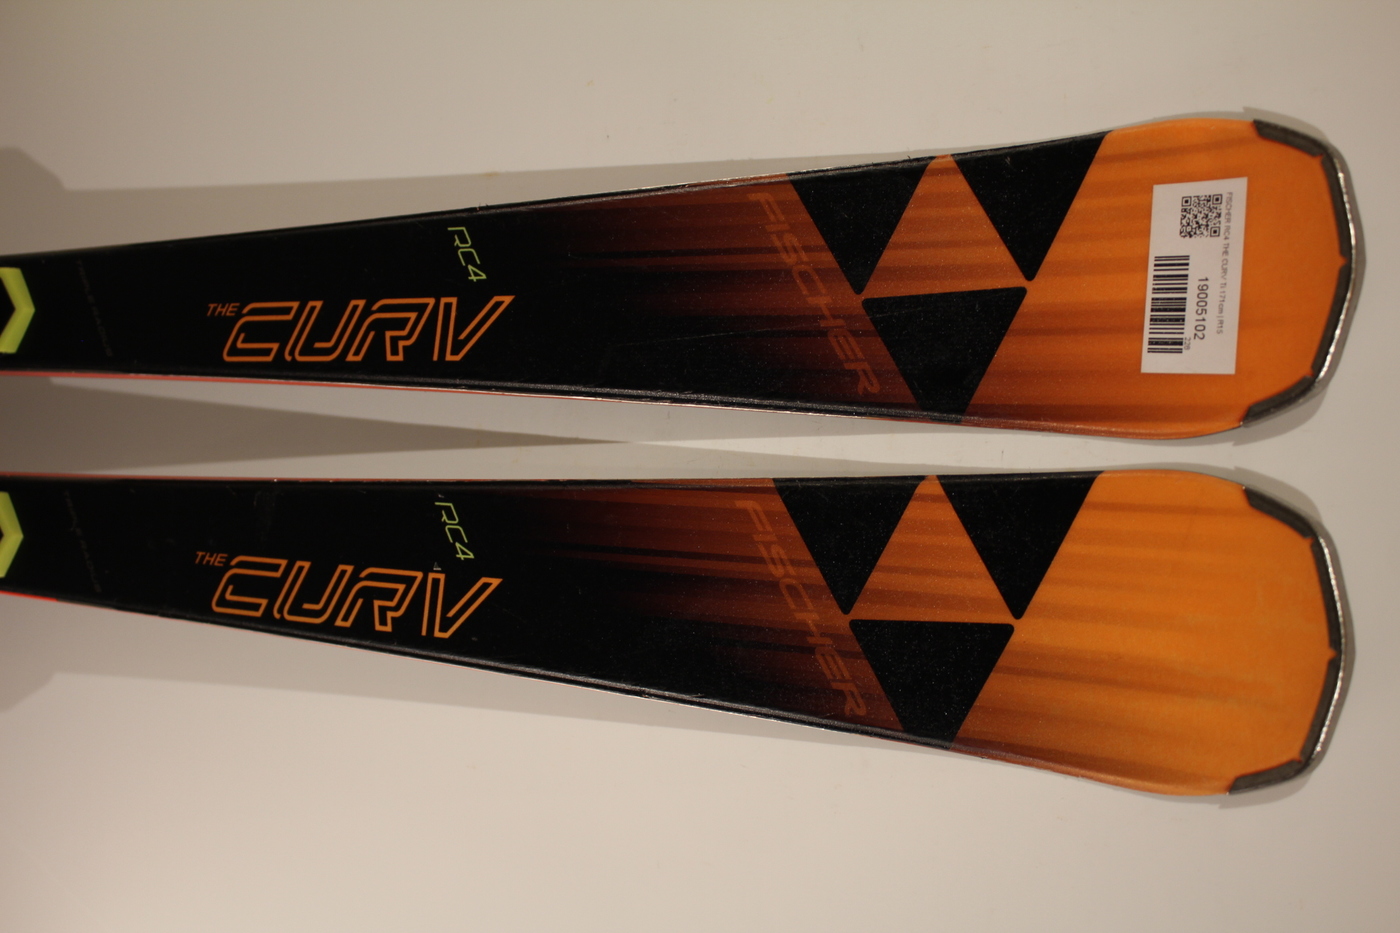 純正買蔵 フィッシャー RC4 CURV 171cm スキー板 - ウィンタースポーツ